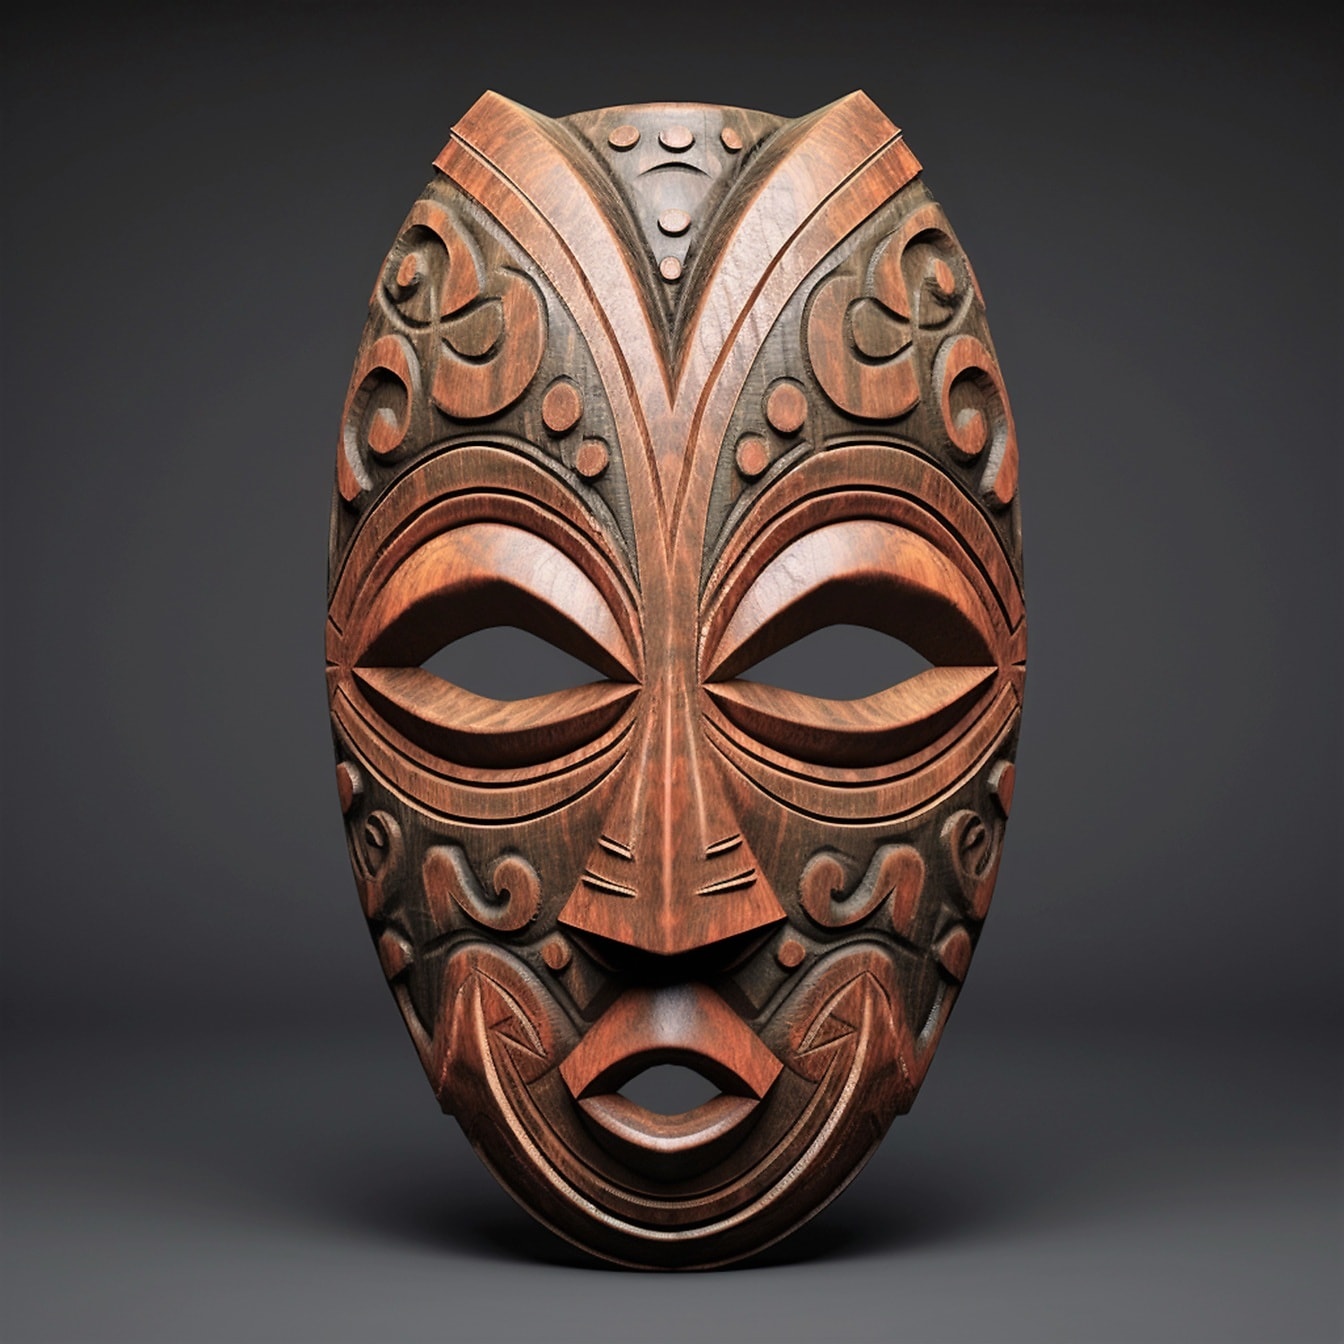 Masker wajah tradisional Afrika buatan tangan close-up